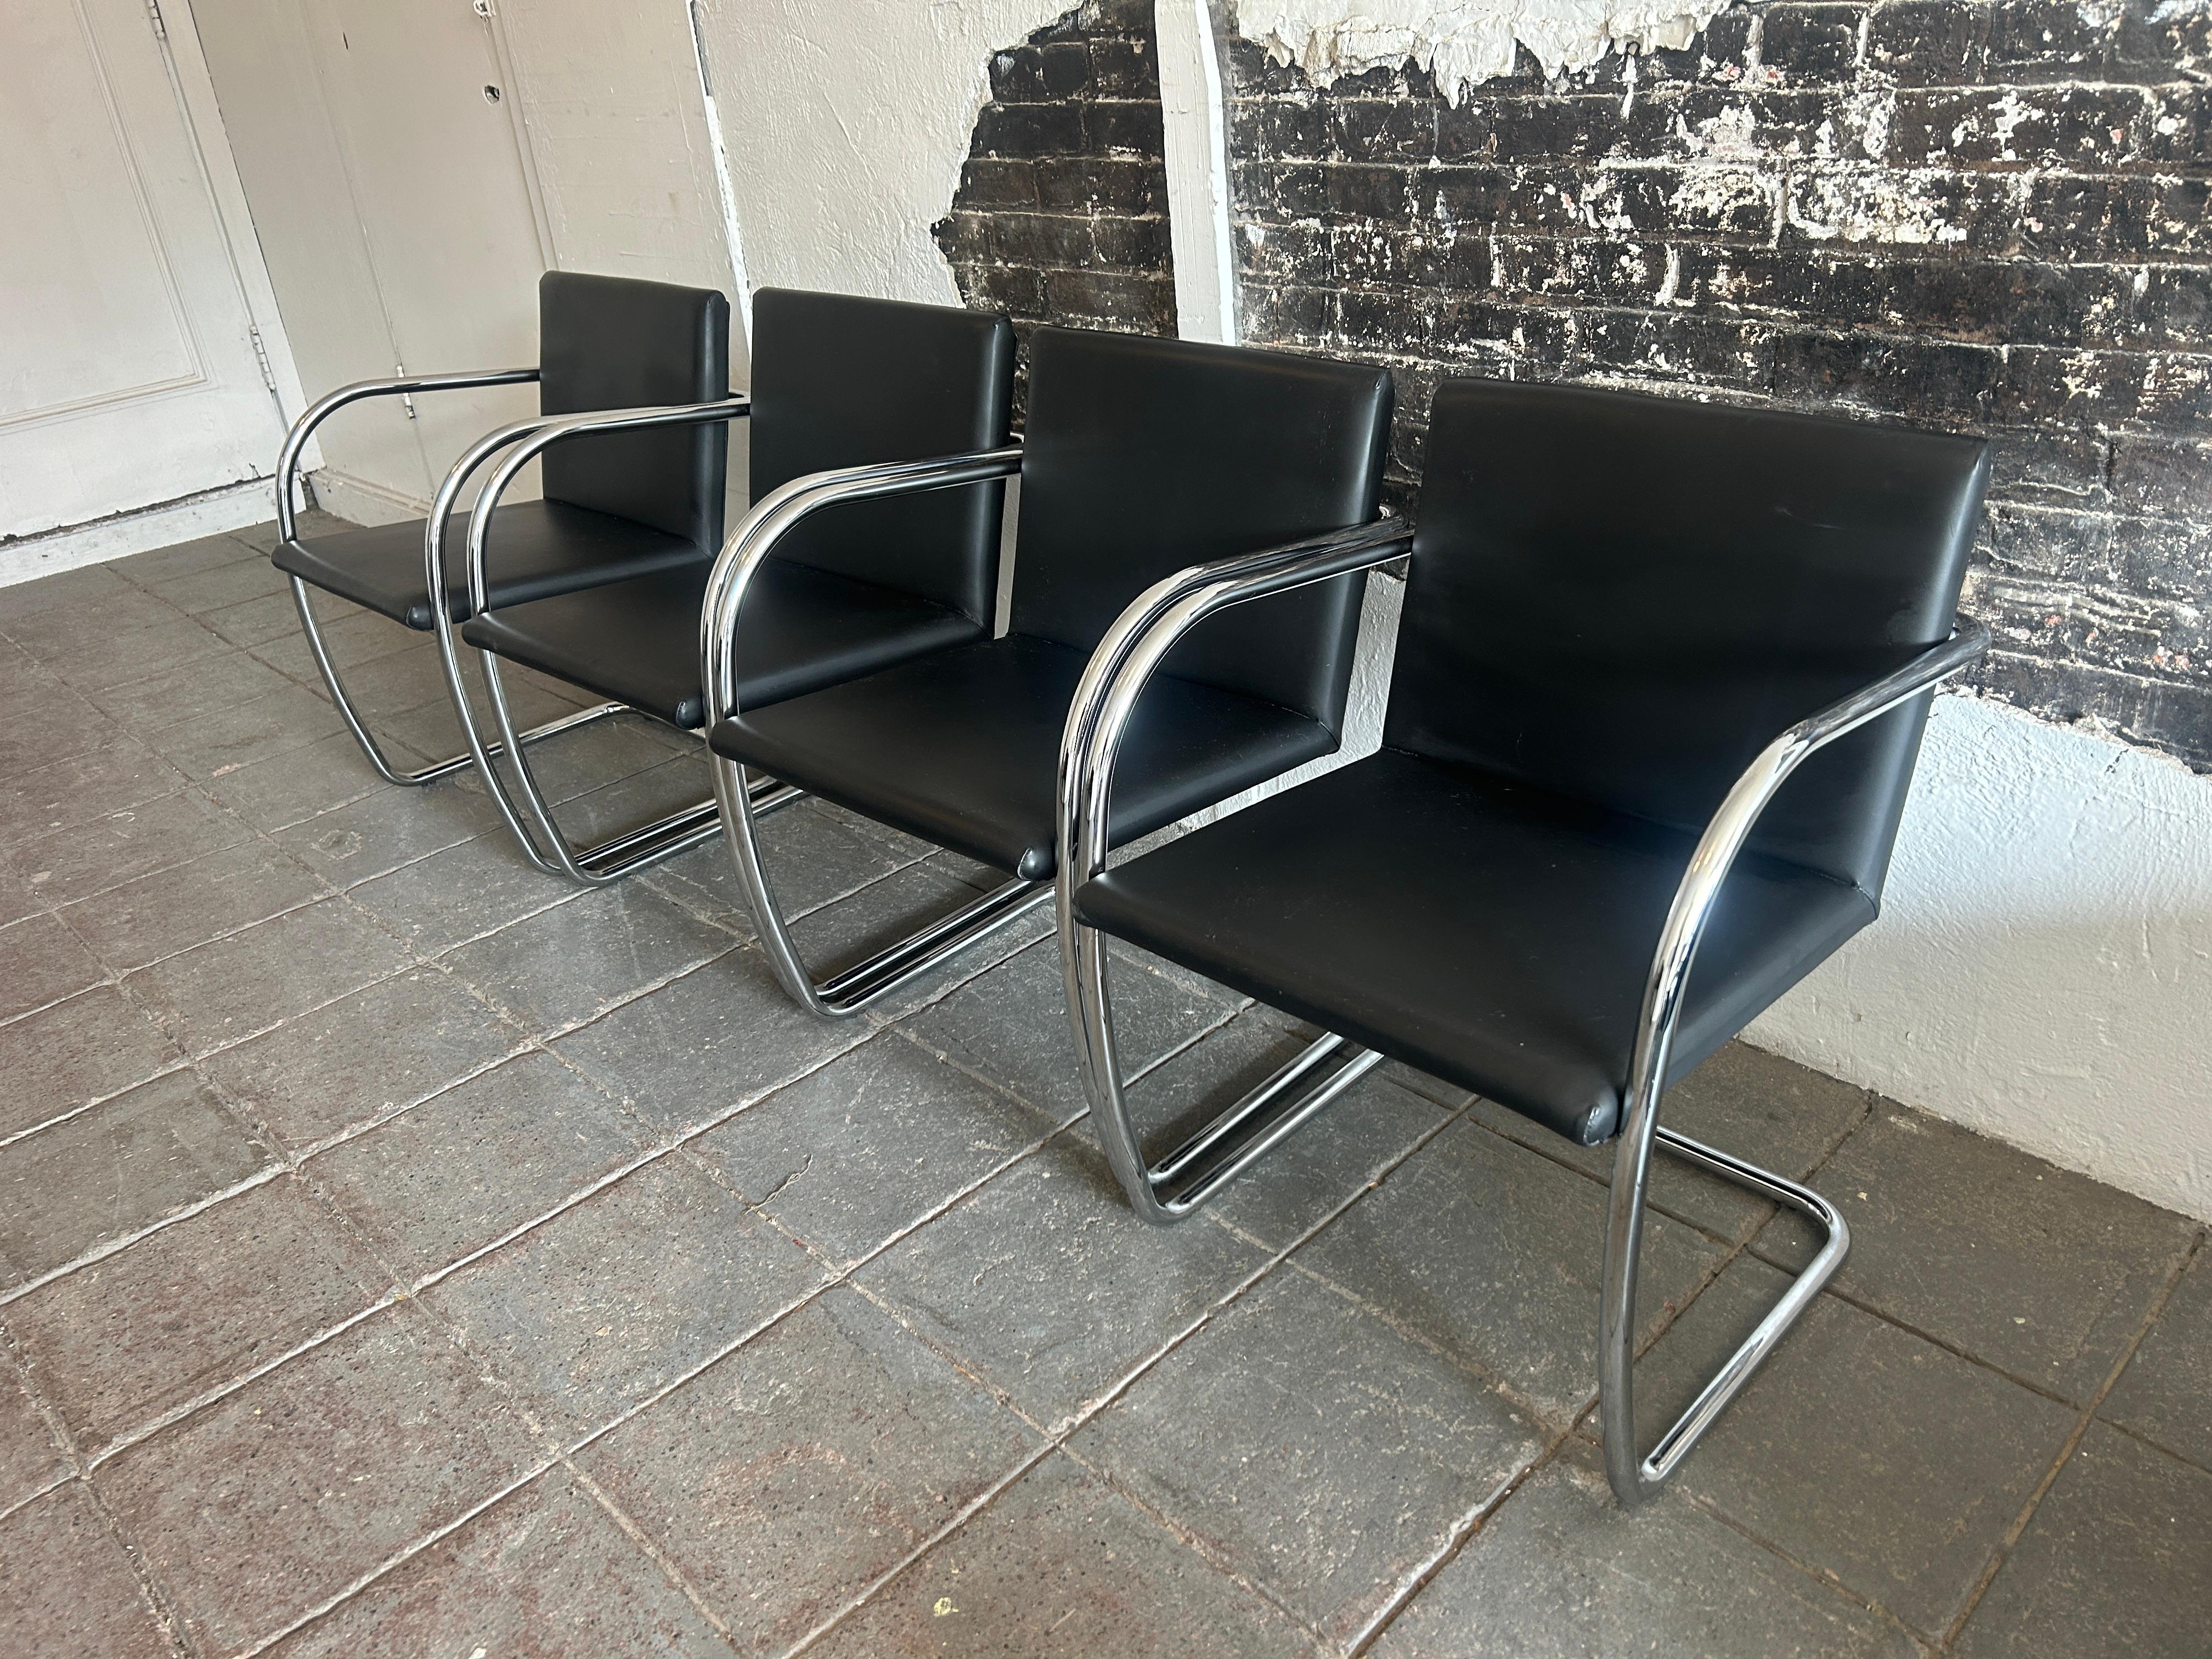 Ensemble de 4 chaises modernes en cuir noir Brno chromé. Cadre tubulaire cintré chromé avec revêtement en cuir noir souple. Design moderne classique de Ludwig Mies van der Rohe. Idéal comme chaise de salle à manger ou de bureau - Labellisé Made in